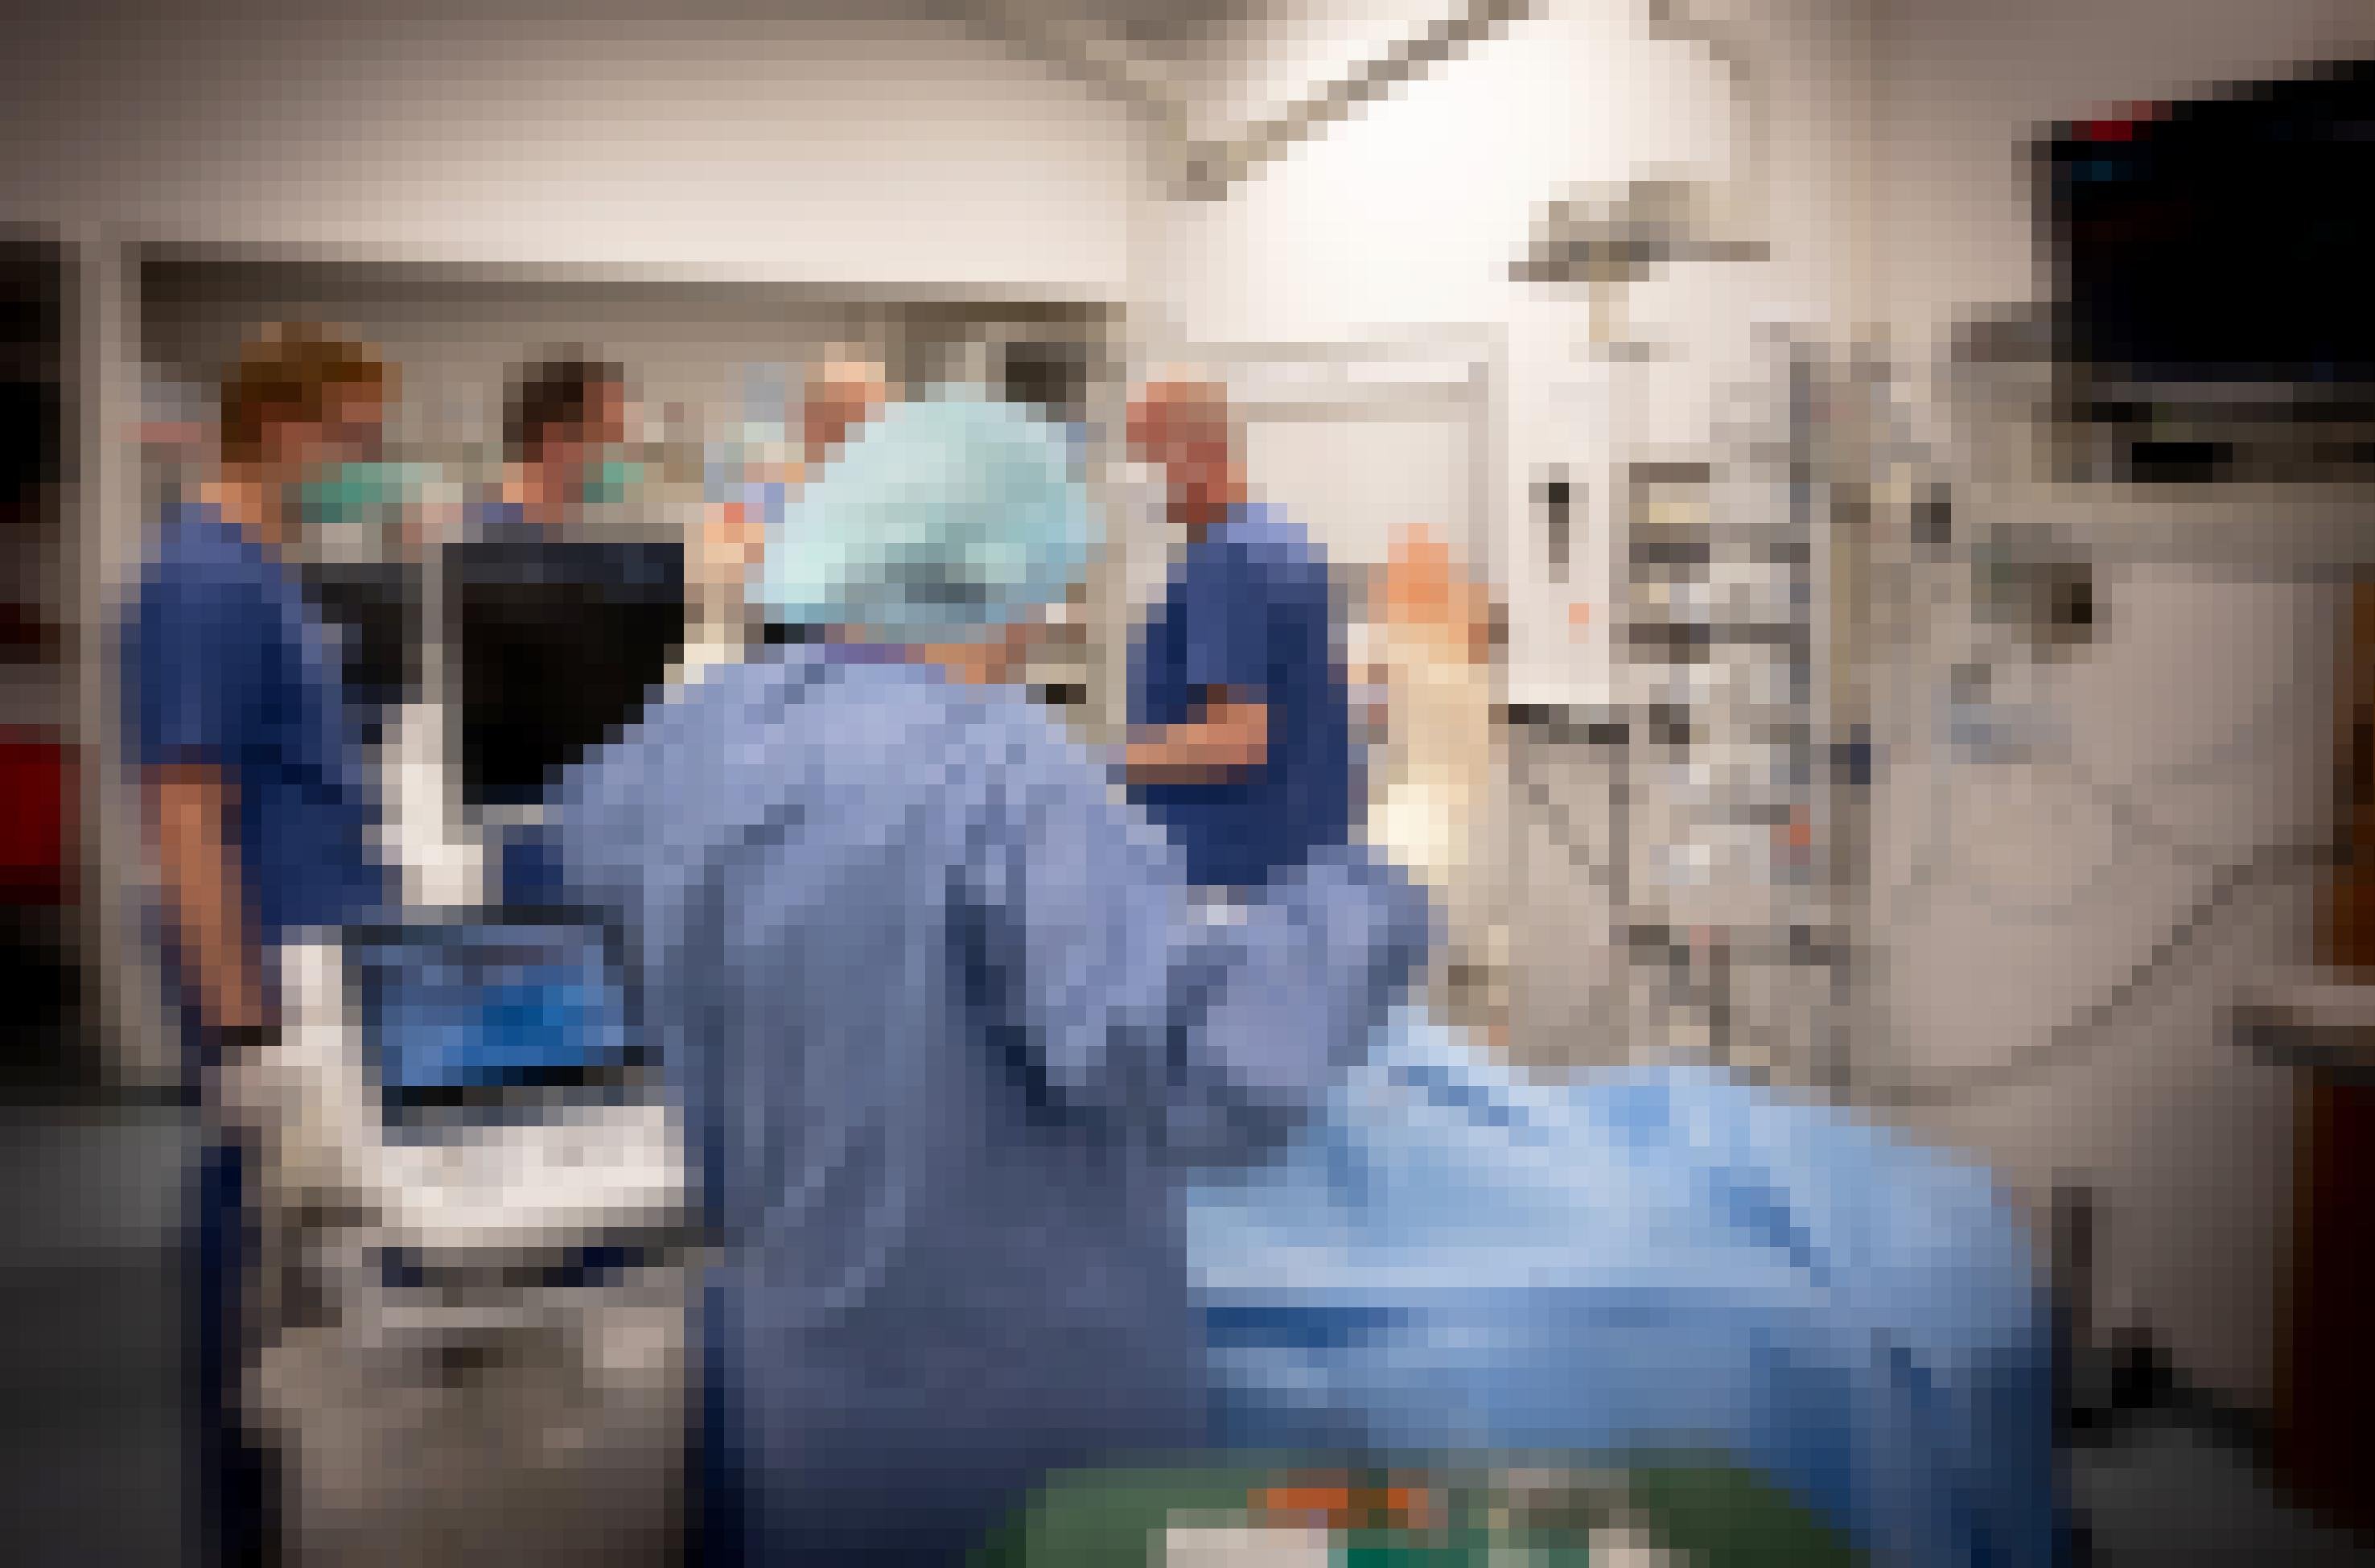 Ärztïnnen und Pflegerïnnen in Schutzkleidung auf einer Intensivstation zwischen medizinischen Geräten und einem Patienten in blauem Laken.